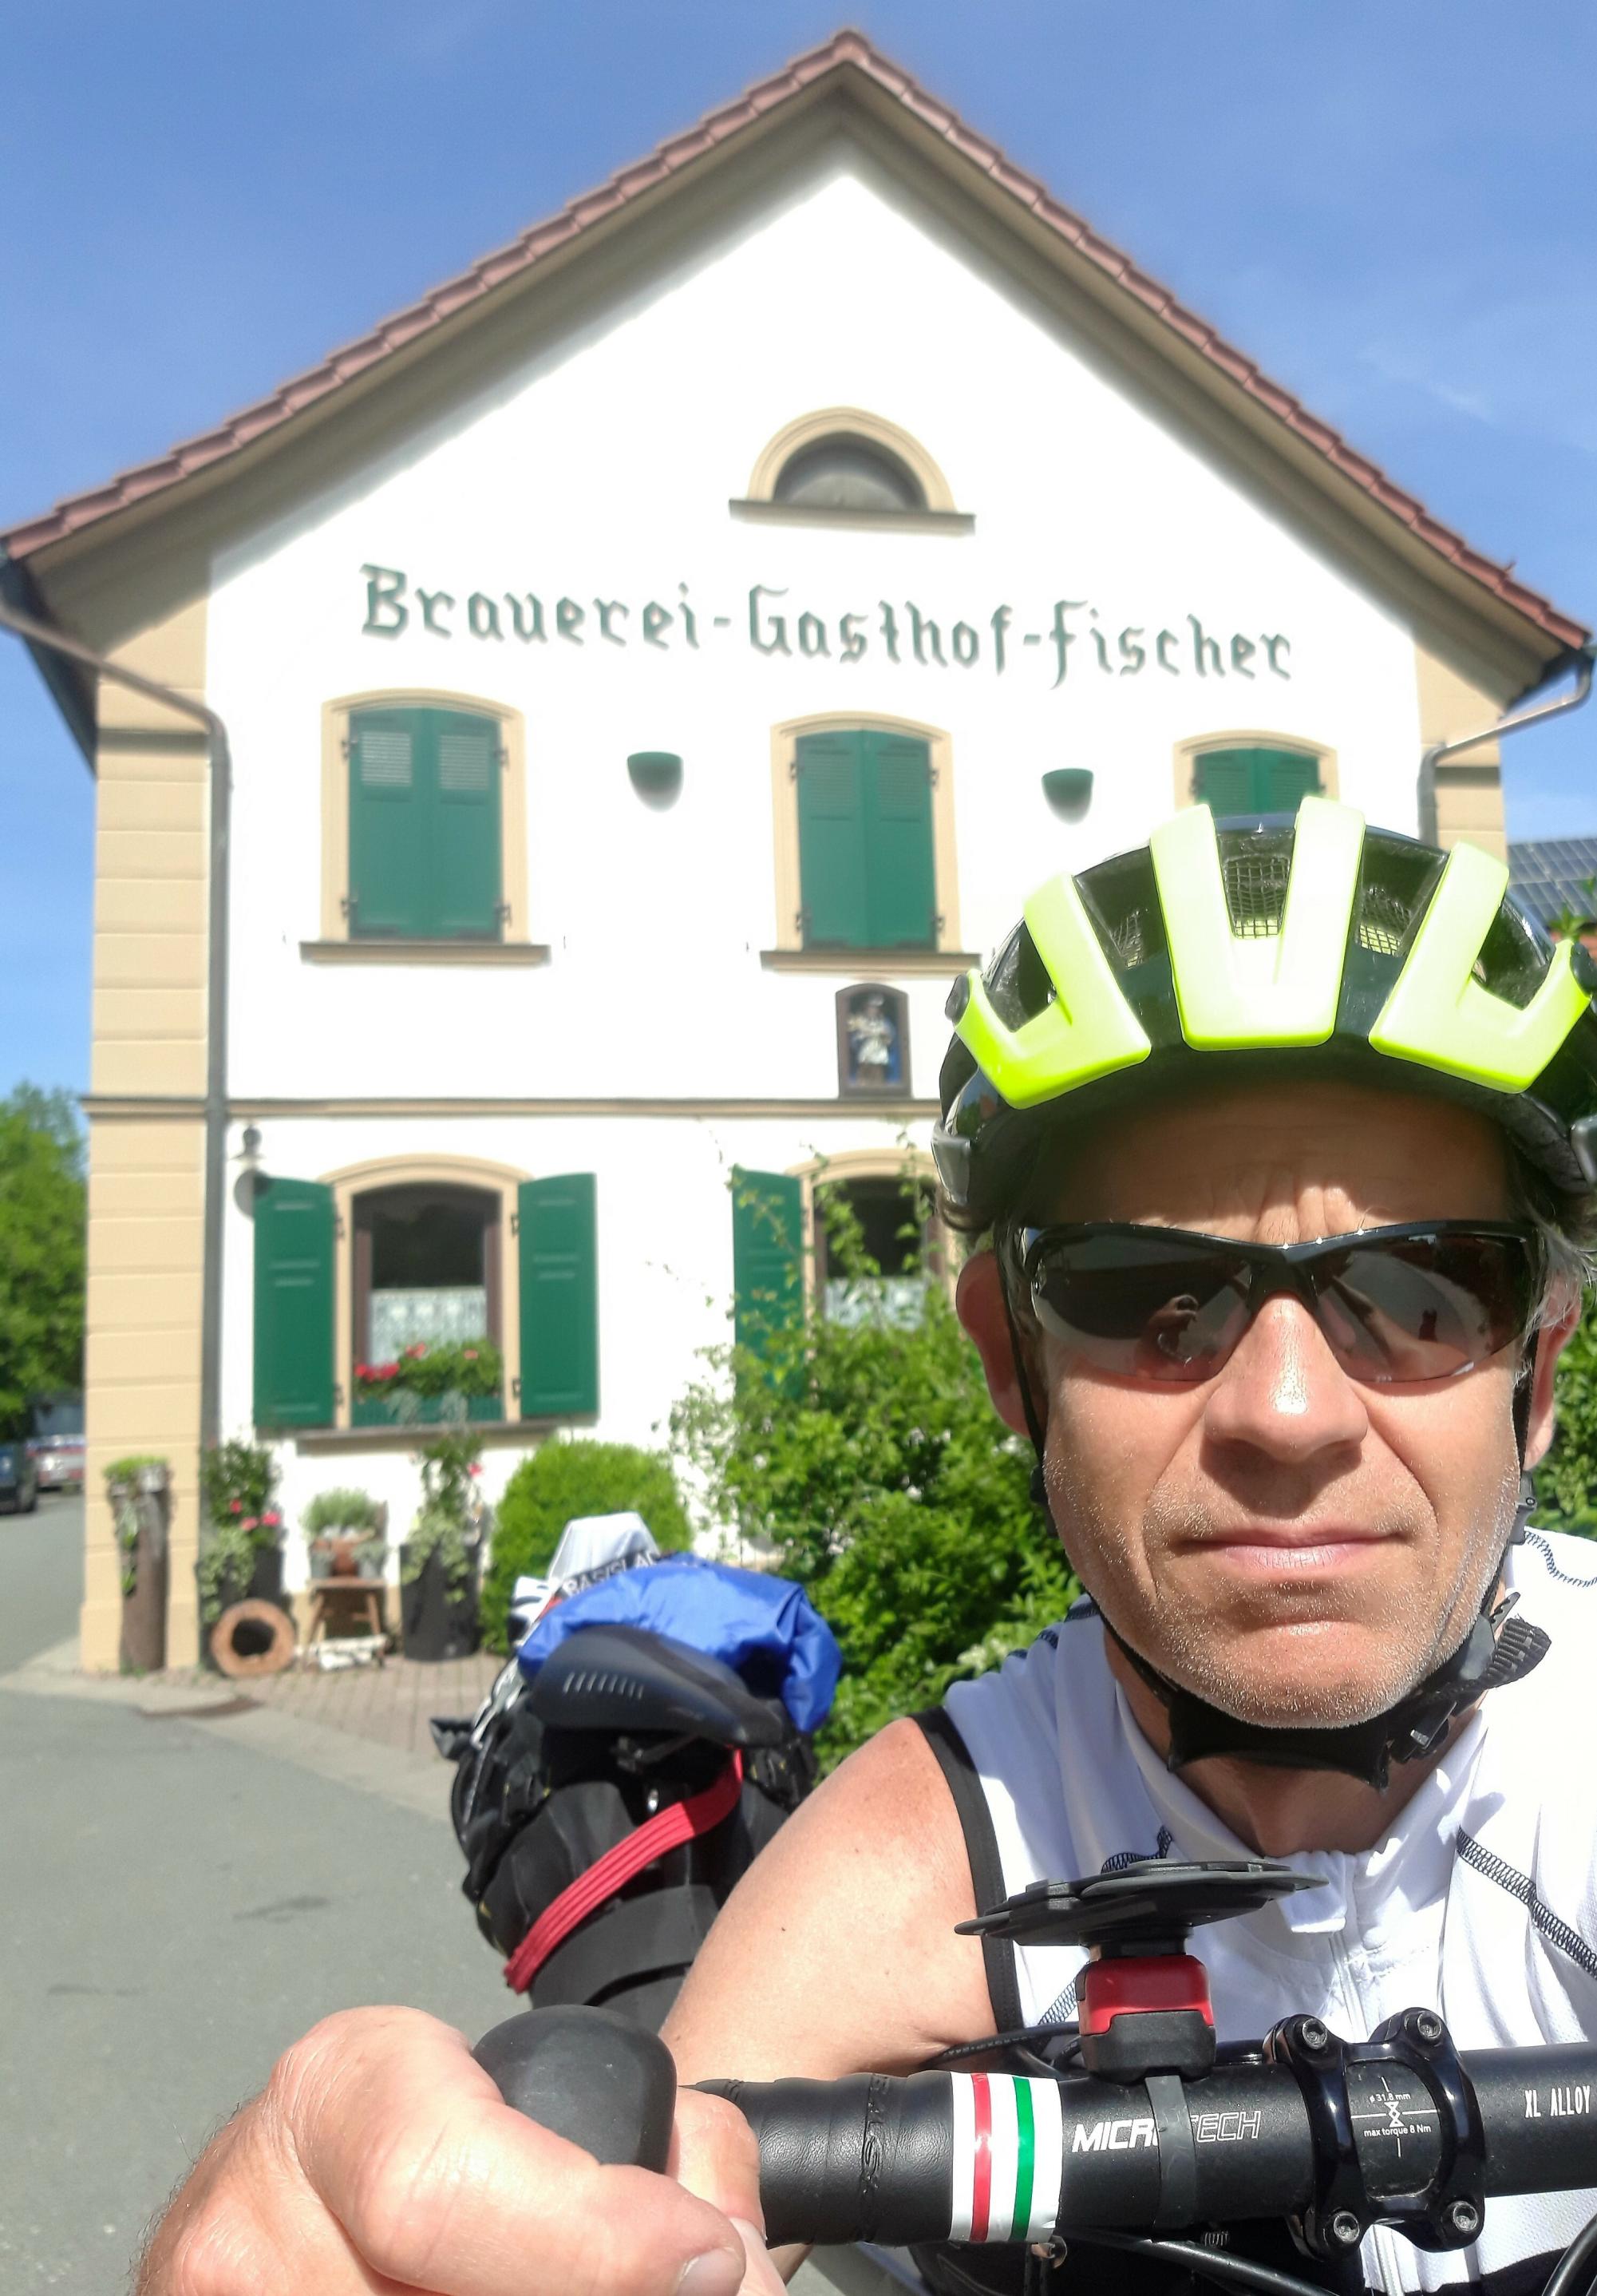 Selfie des Helm-bewehrten RadelndenReporters vor der weißen Hausfront der Brauerei, Aufschrift dort: Brauerei-Gasthof-Fischer.